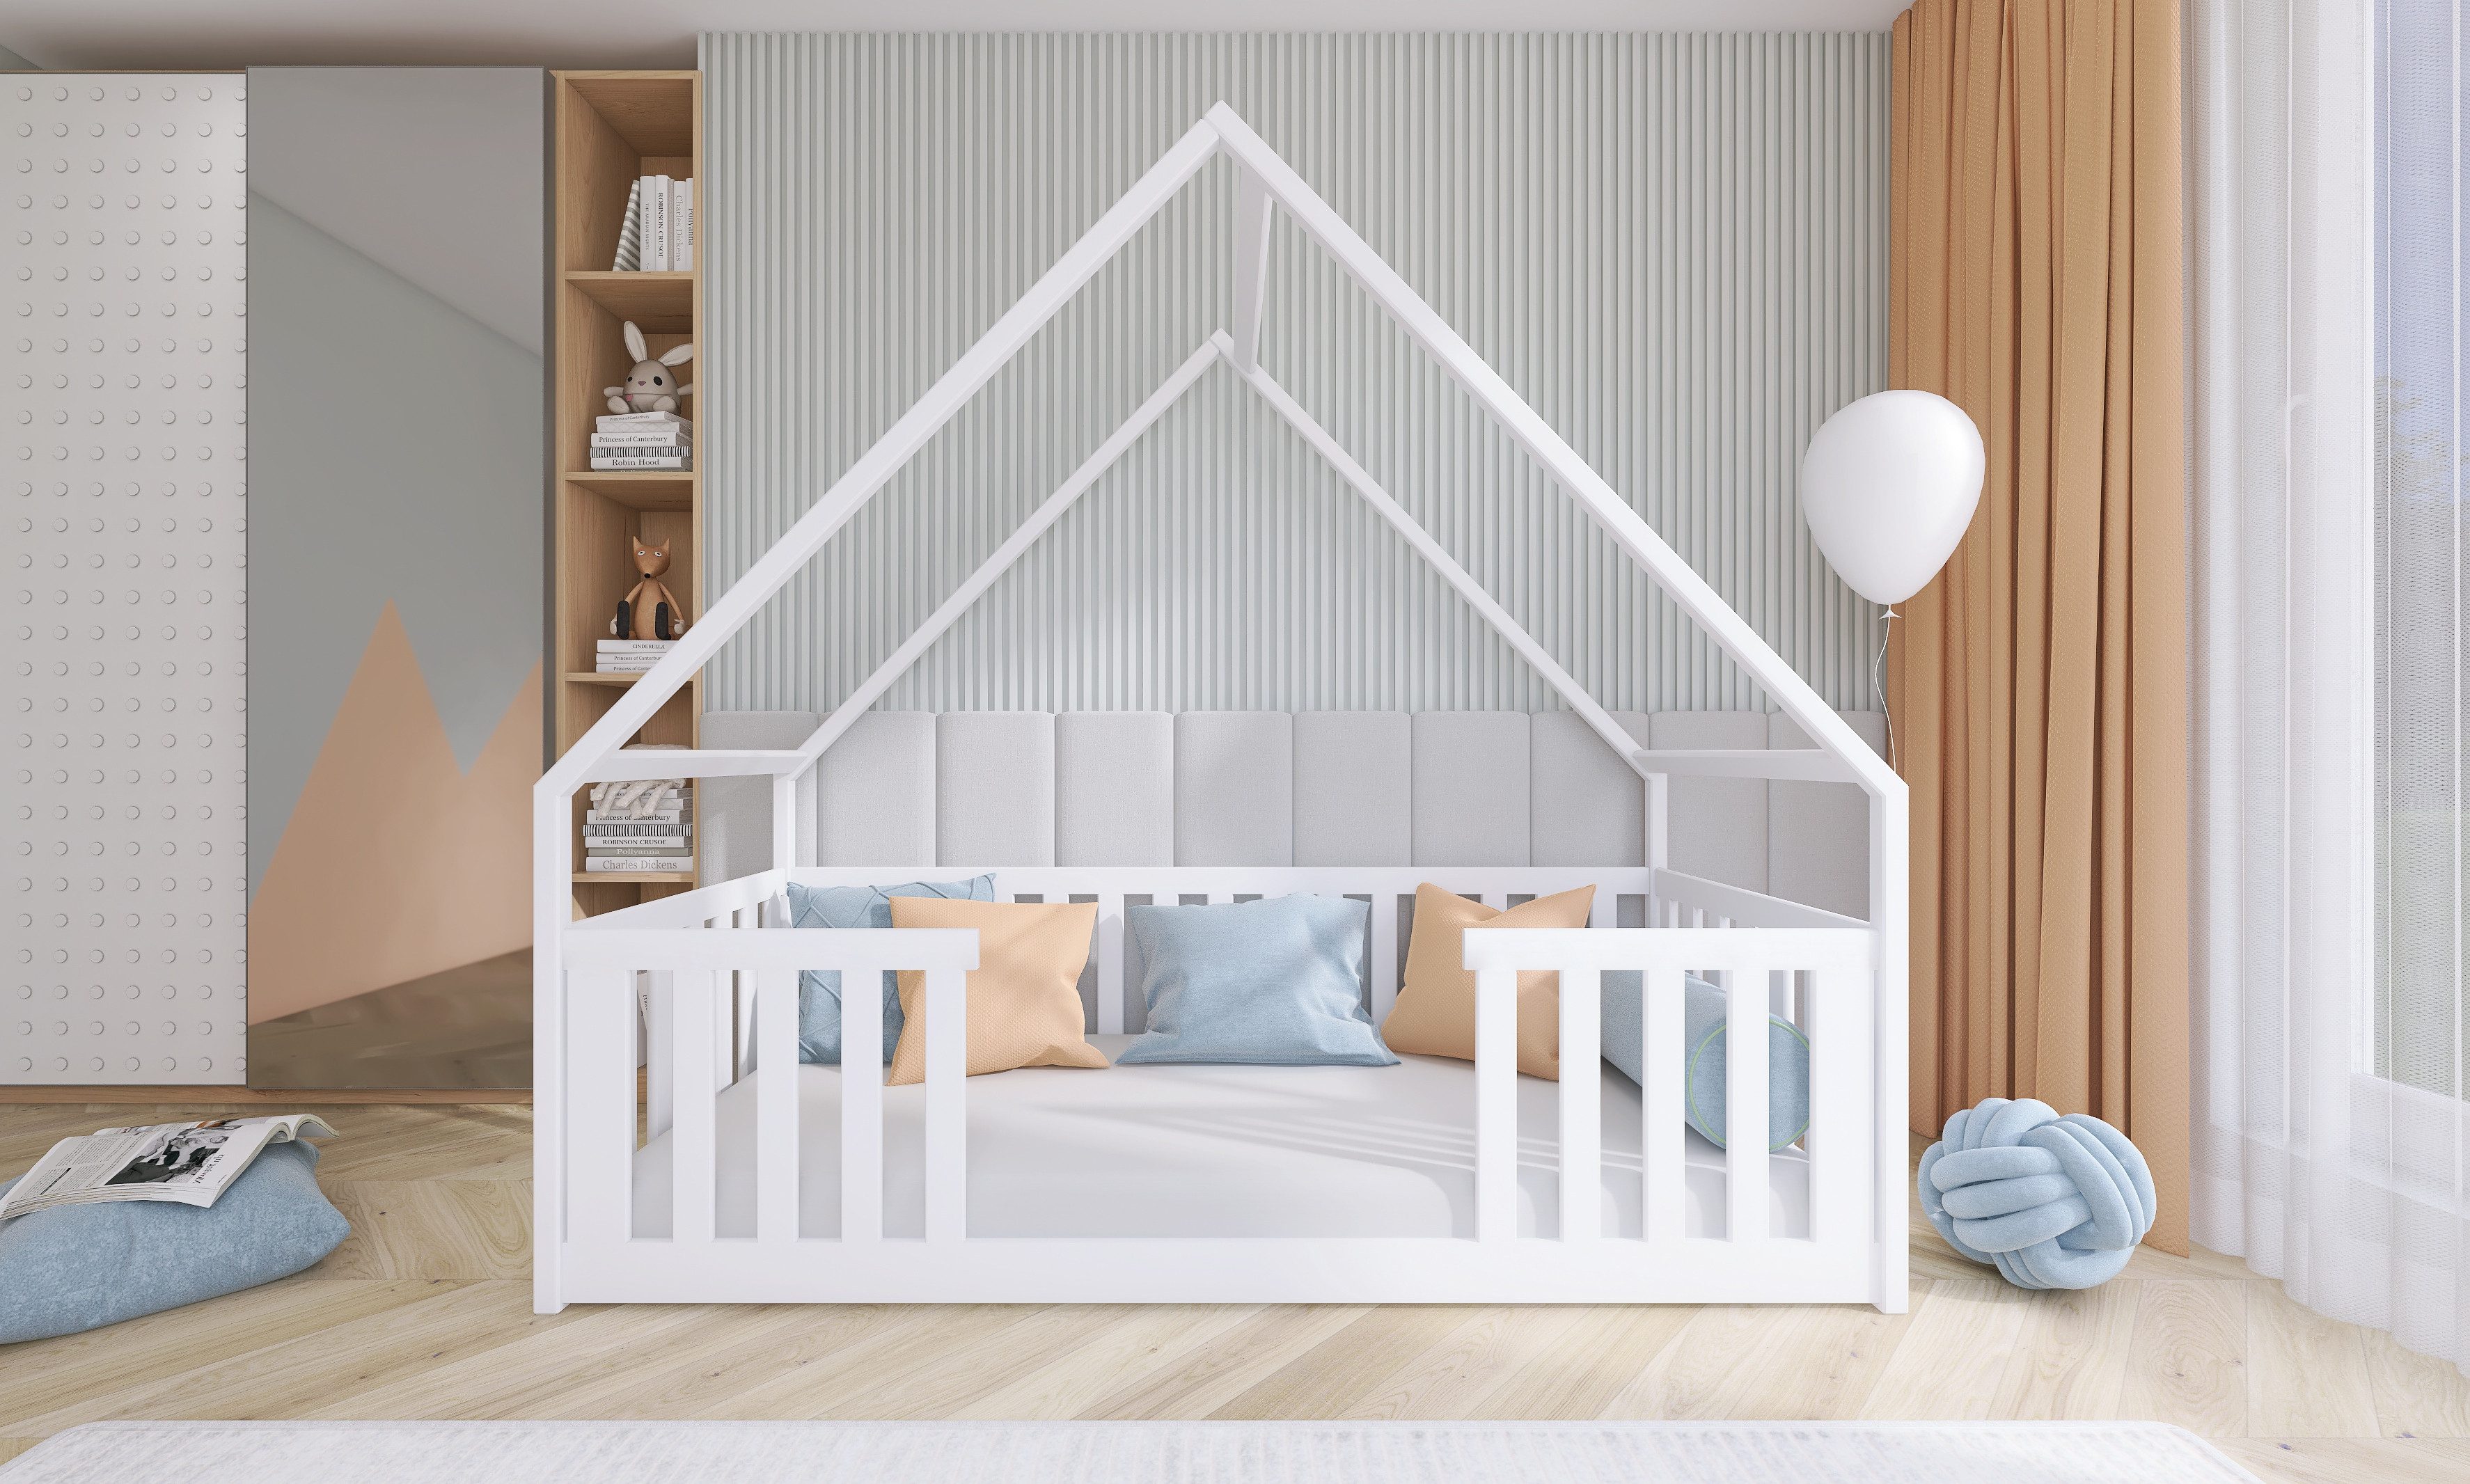 thematys Hausbett Bodenbett Kinderbett Laufstall mit Rausfallschutz (für Jungen und Mädchen), auch als Babybett geeignet